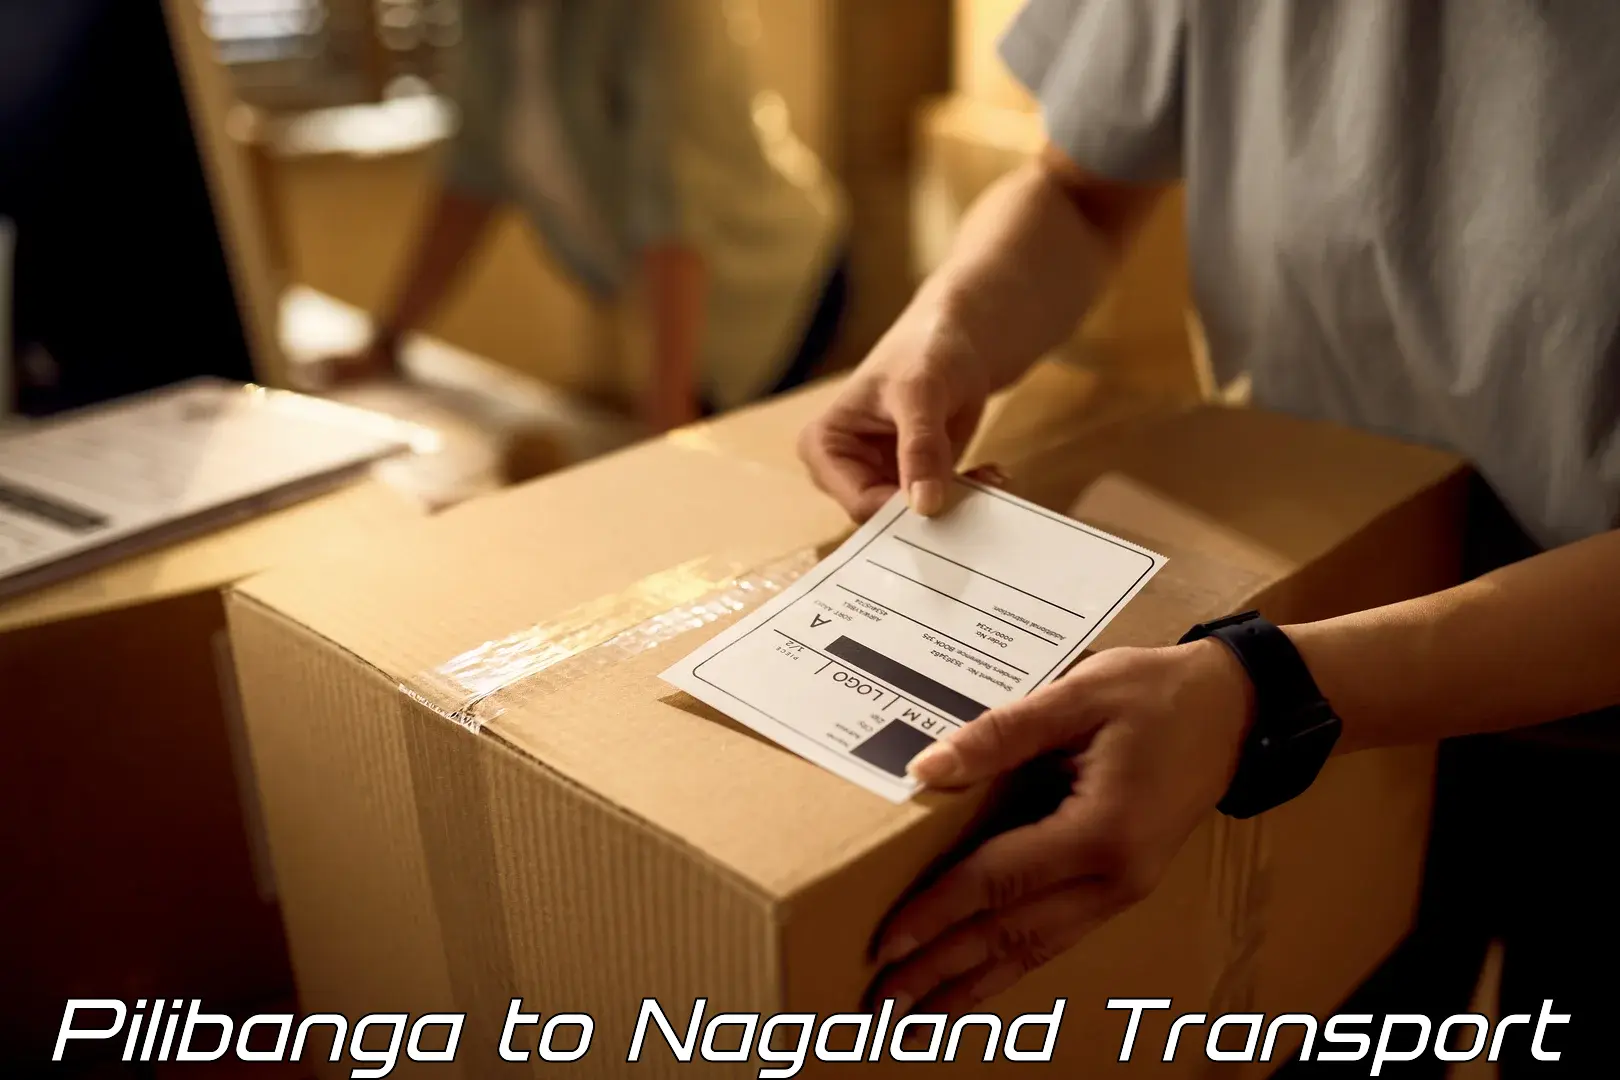 Express transport services Pilibanga to Nagaland